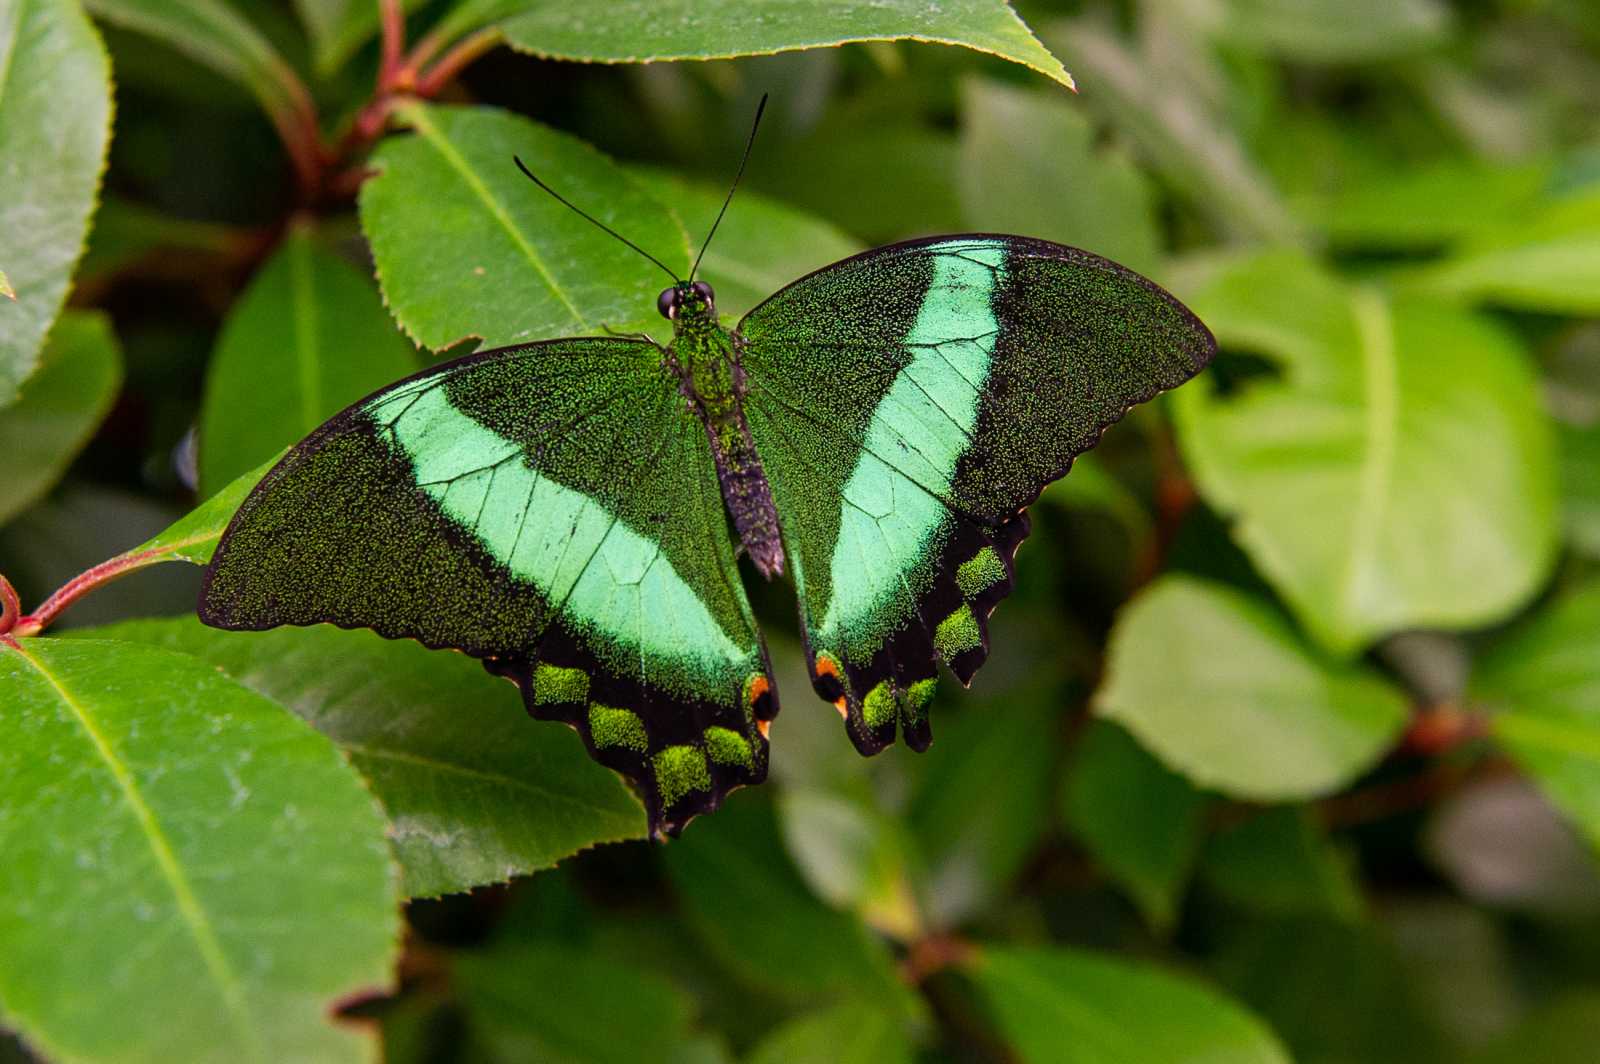 A papilio palinurus pillangók fémfényű zöld pikkelyeikkel ejtenek ámulatba.
Lepkeéletben mérve sok, emberi léptékben viszont túl kevés az a két hetes élettartam, amely alatt szemügyre vehetőek a dél-amerikai lepkék gyönyörű szárnyai.